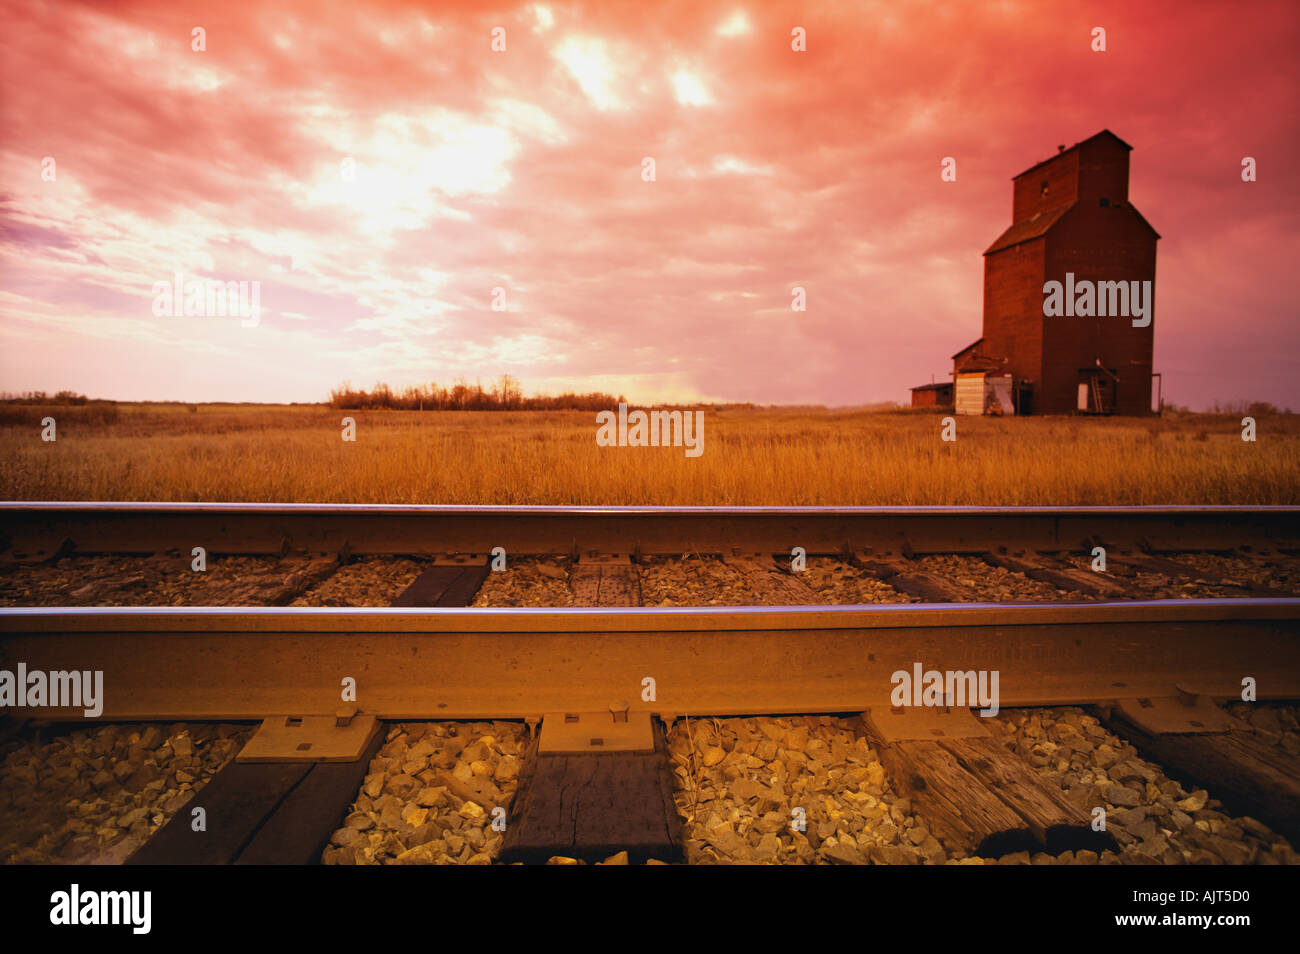 Railroad track and grain elevator Stock Photo